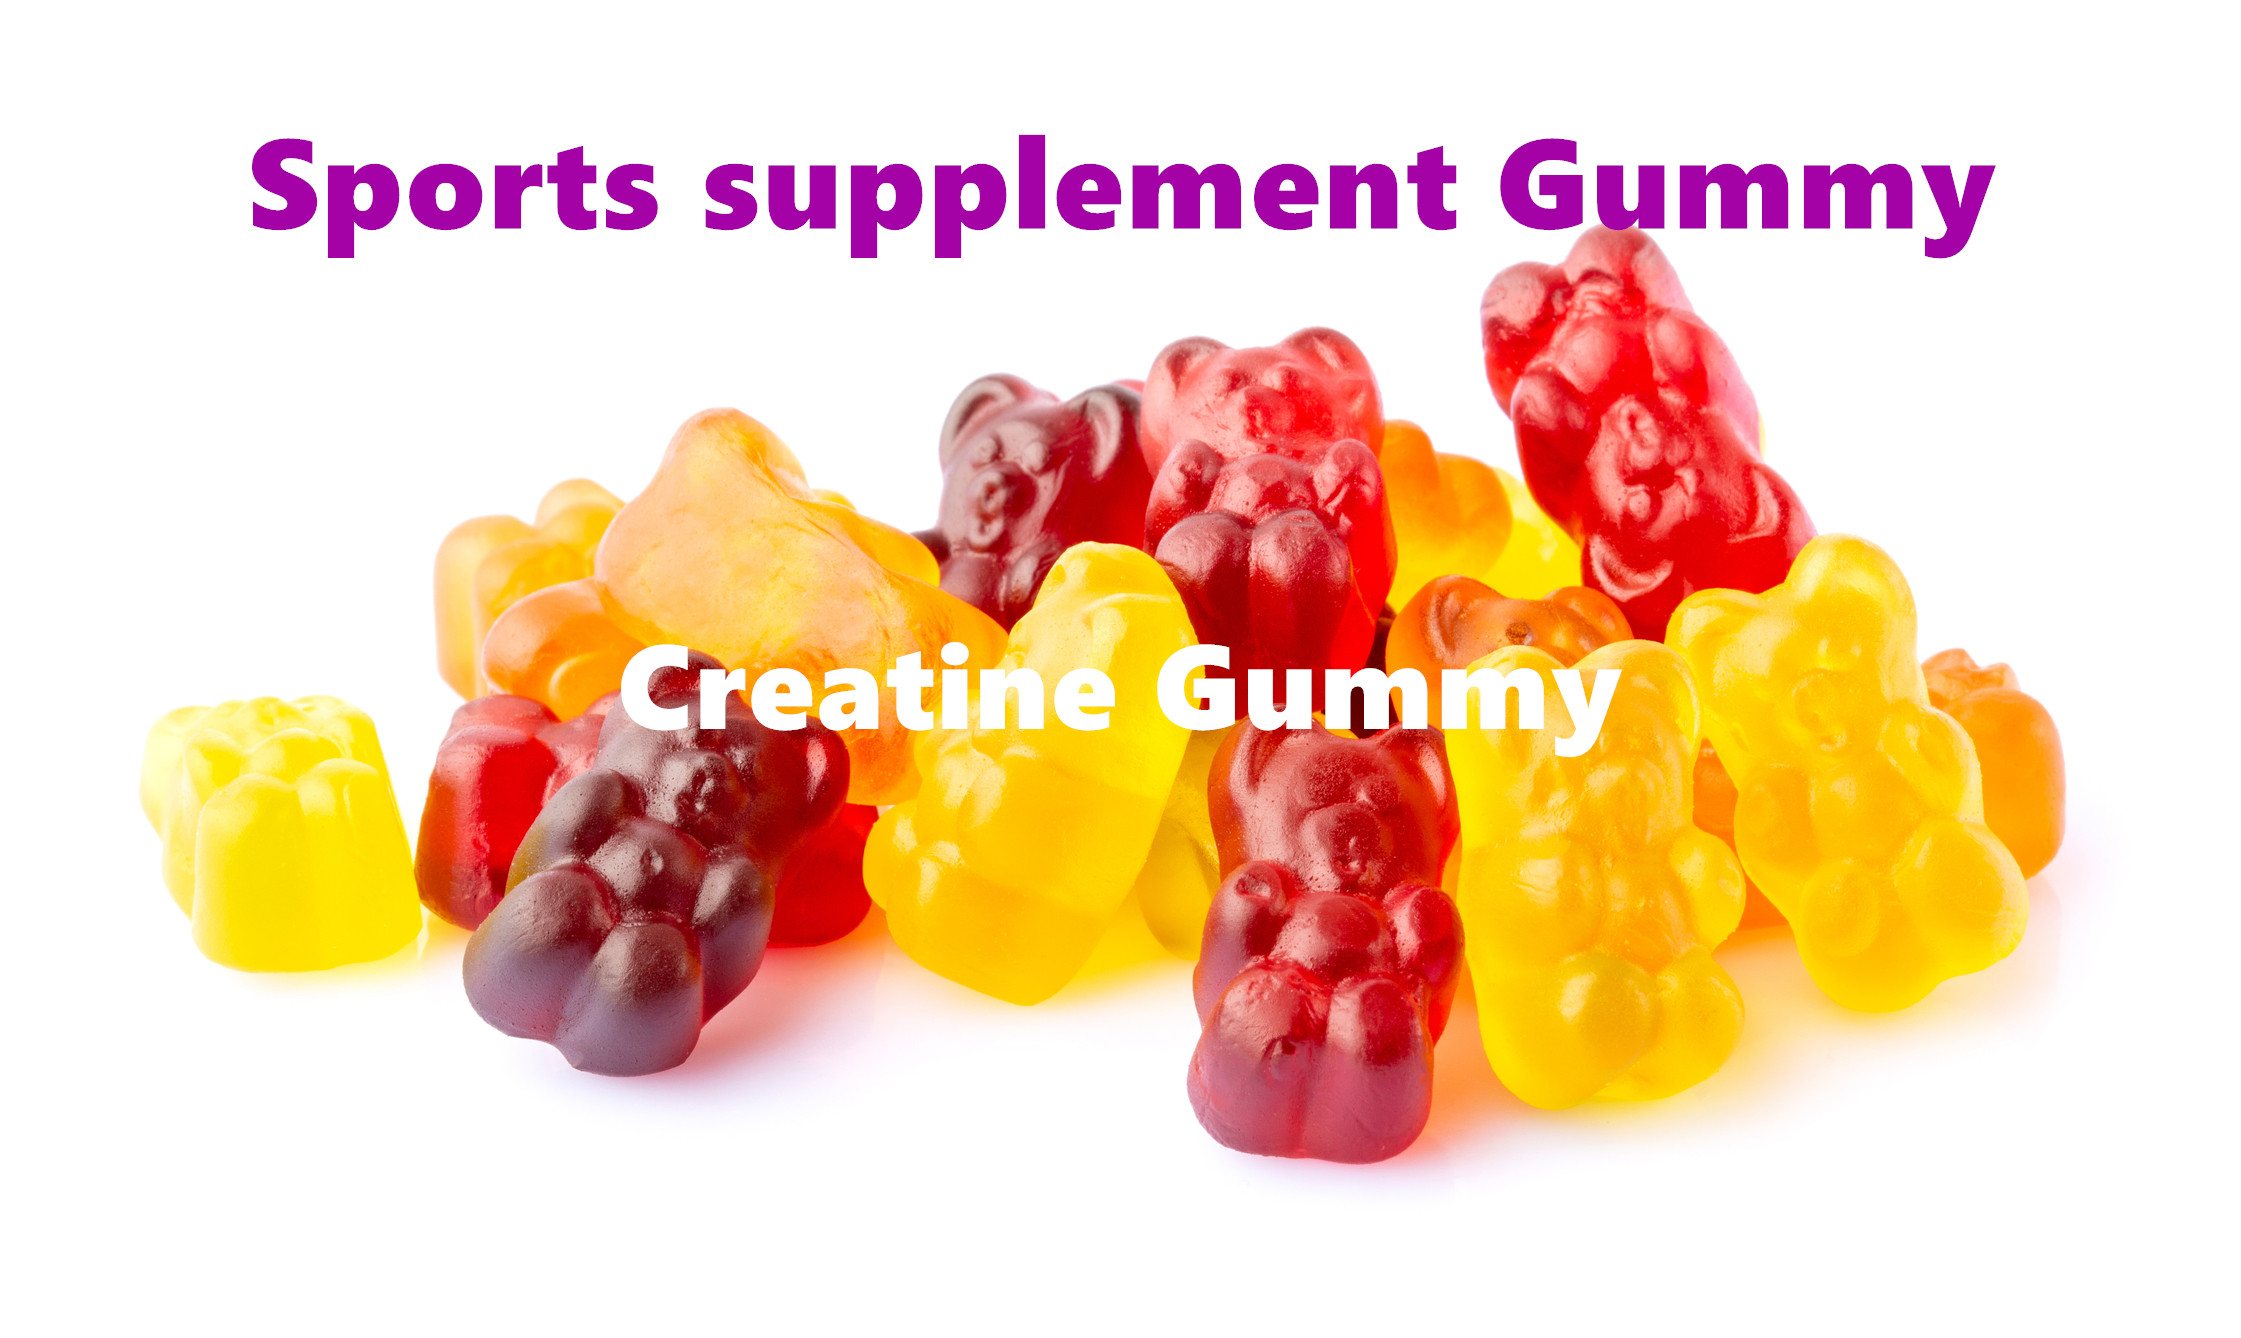 Creatine Gummies - მოსახერხებელი და ეფექტური გზა ატლეტური მუშაობისა და კუნთების ზრდის გასაუმჯობესებლად!